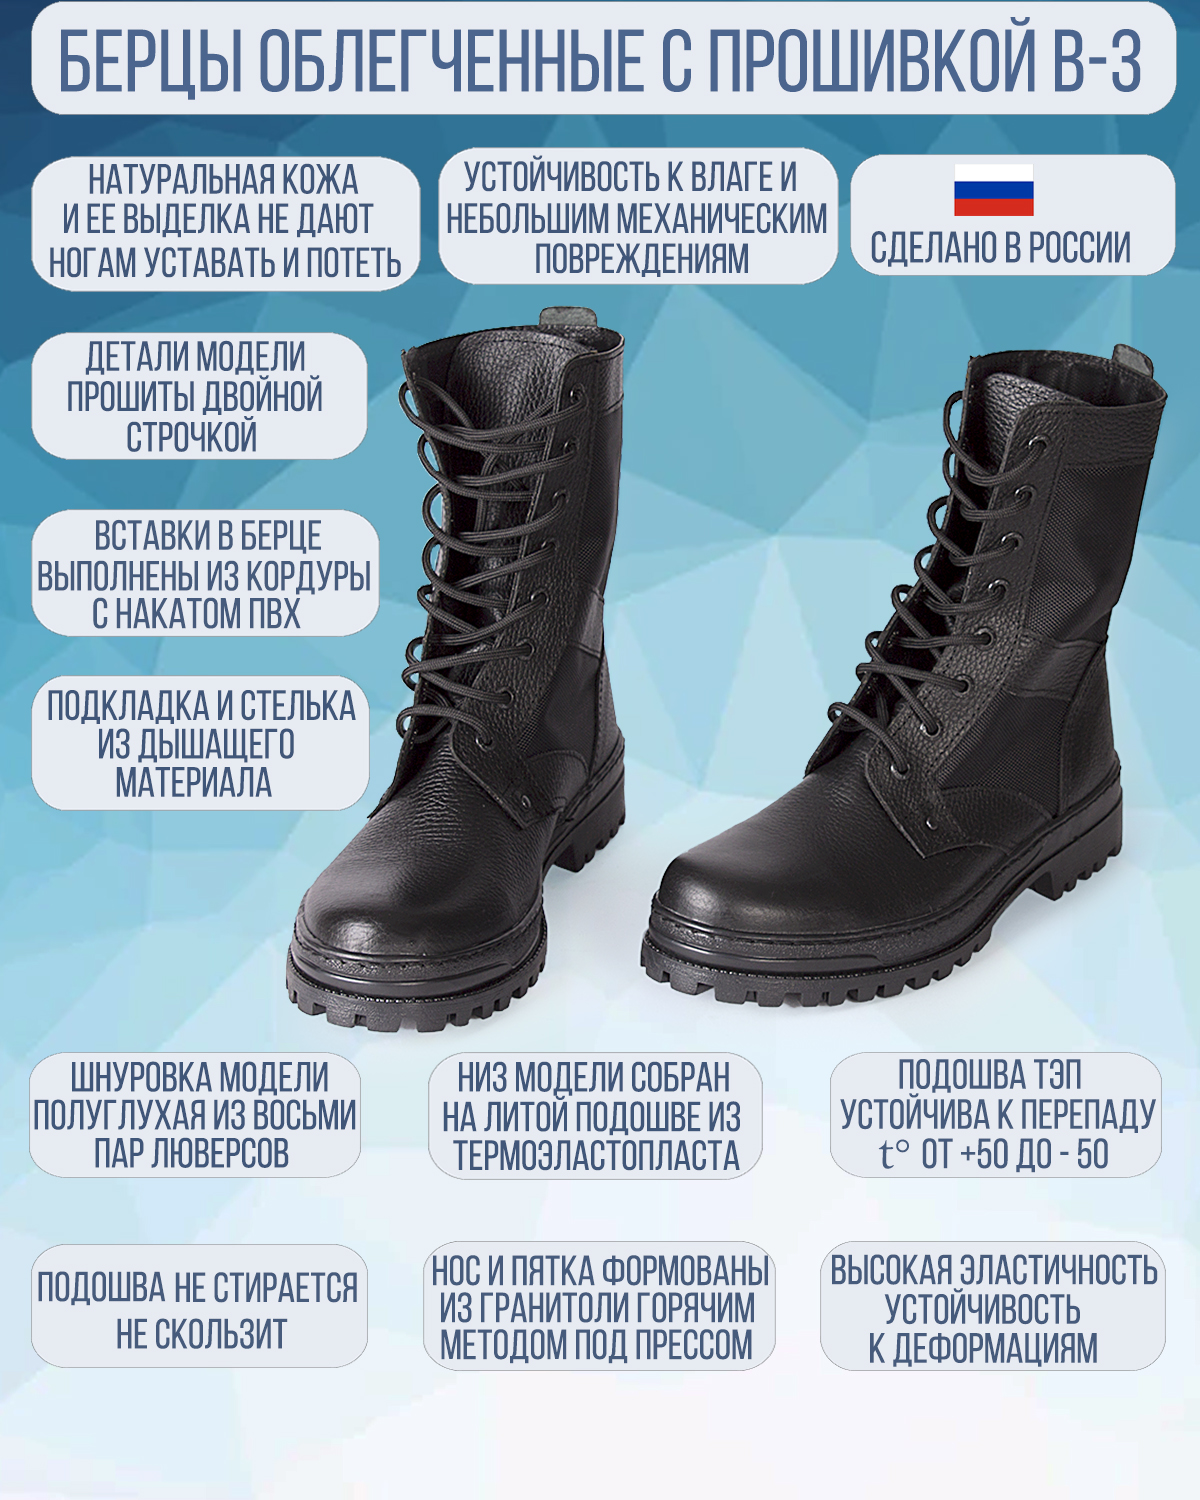 Ботинки рабочие мужские ОбувьСпец B-3 черные 44 - купить в Москве, цены наМегамаркет